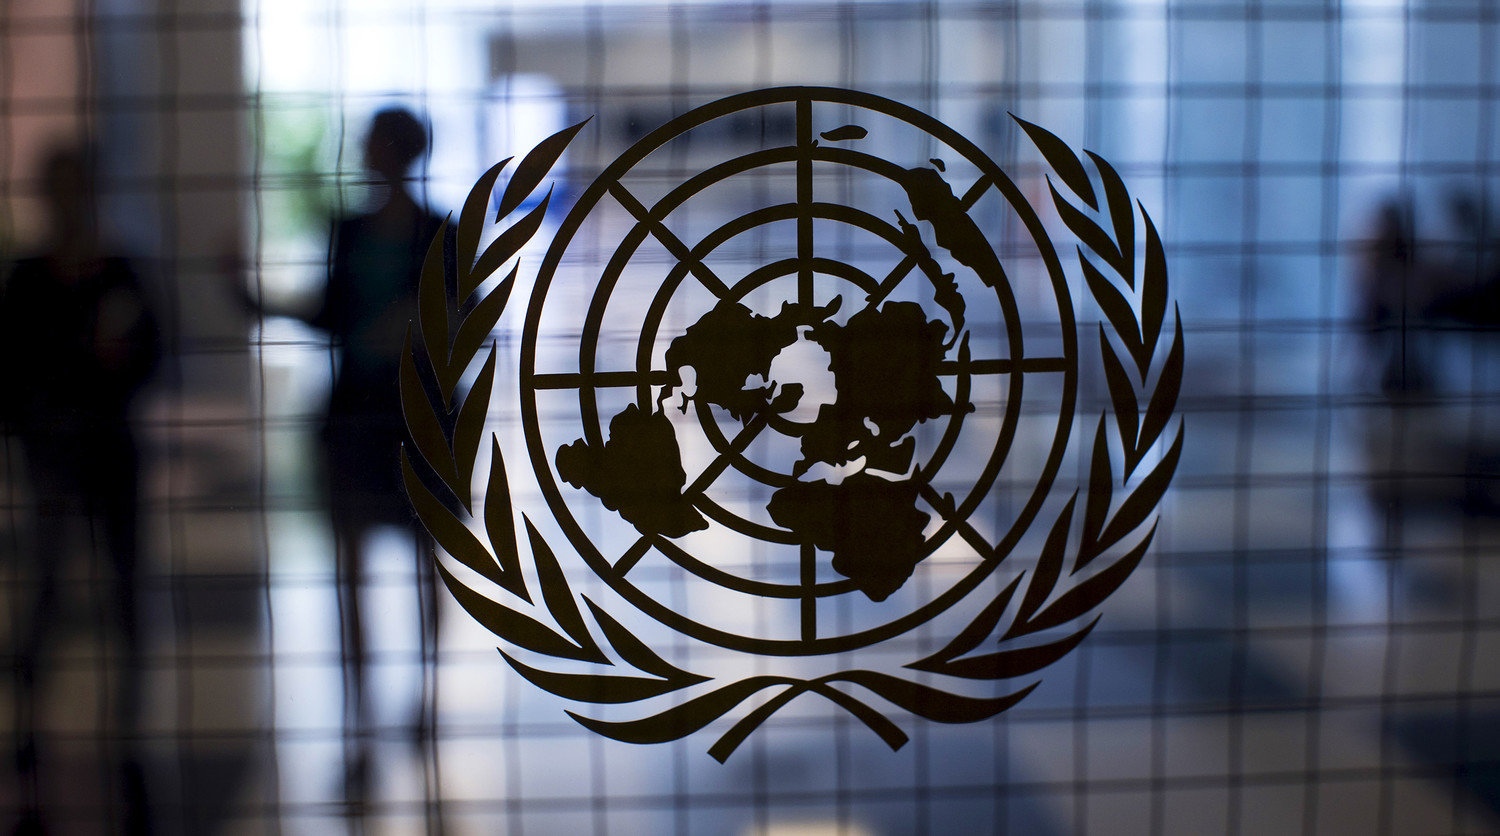 Двама младежки делегати към ООН ще бъдат избрани чрез национален